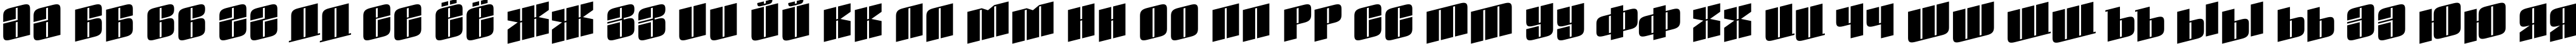 Пример написания русского алфавита шрифтом a_GlobusSpUp